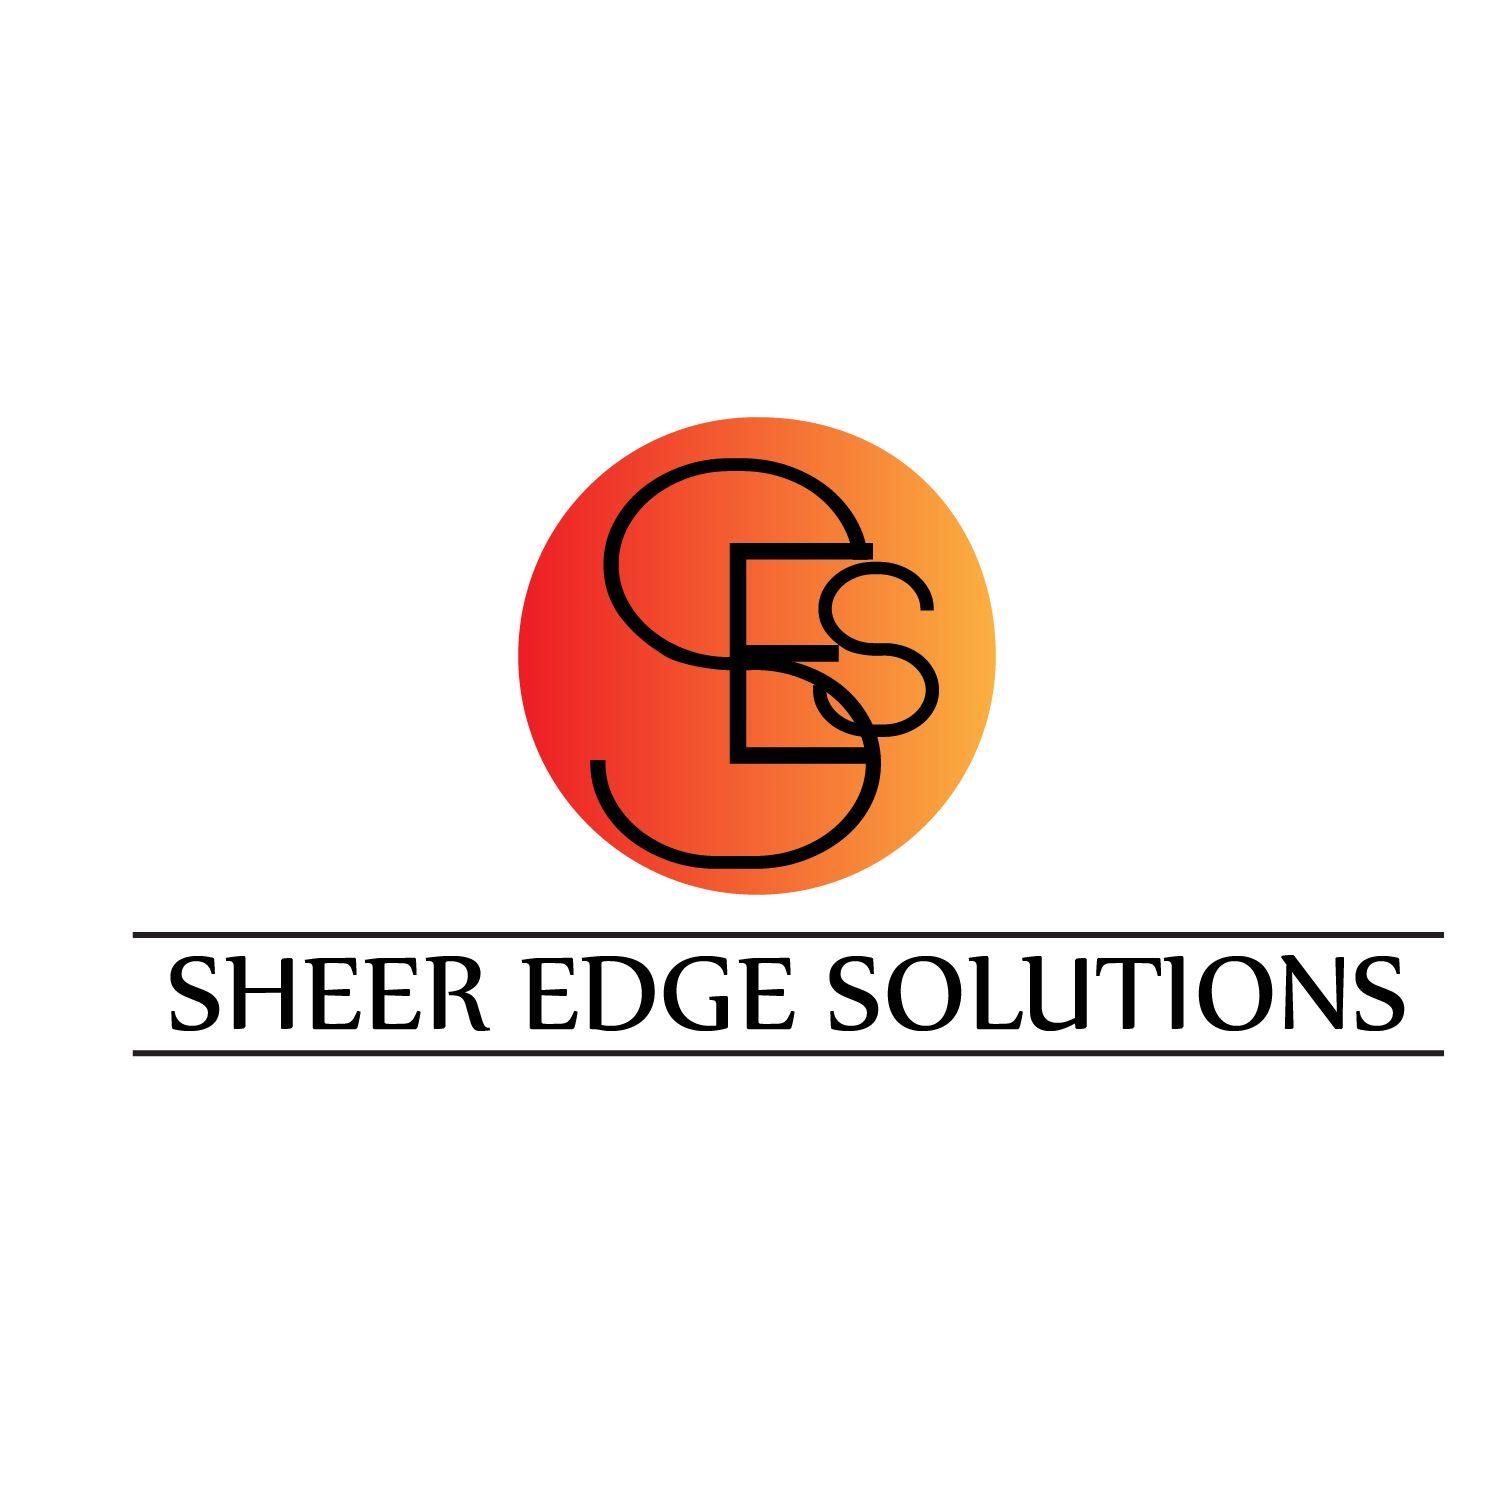 Sheer Logo - Modern, Professional, Builder Logo Design for Sheer Edge Solutions ...